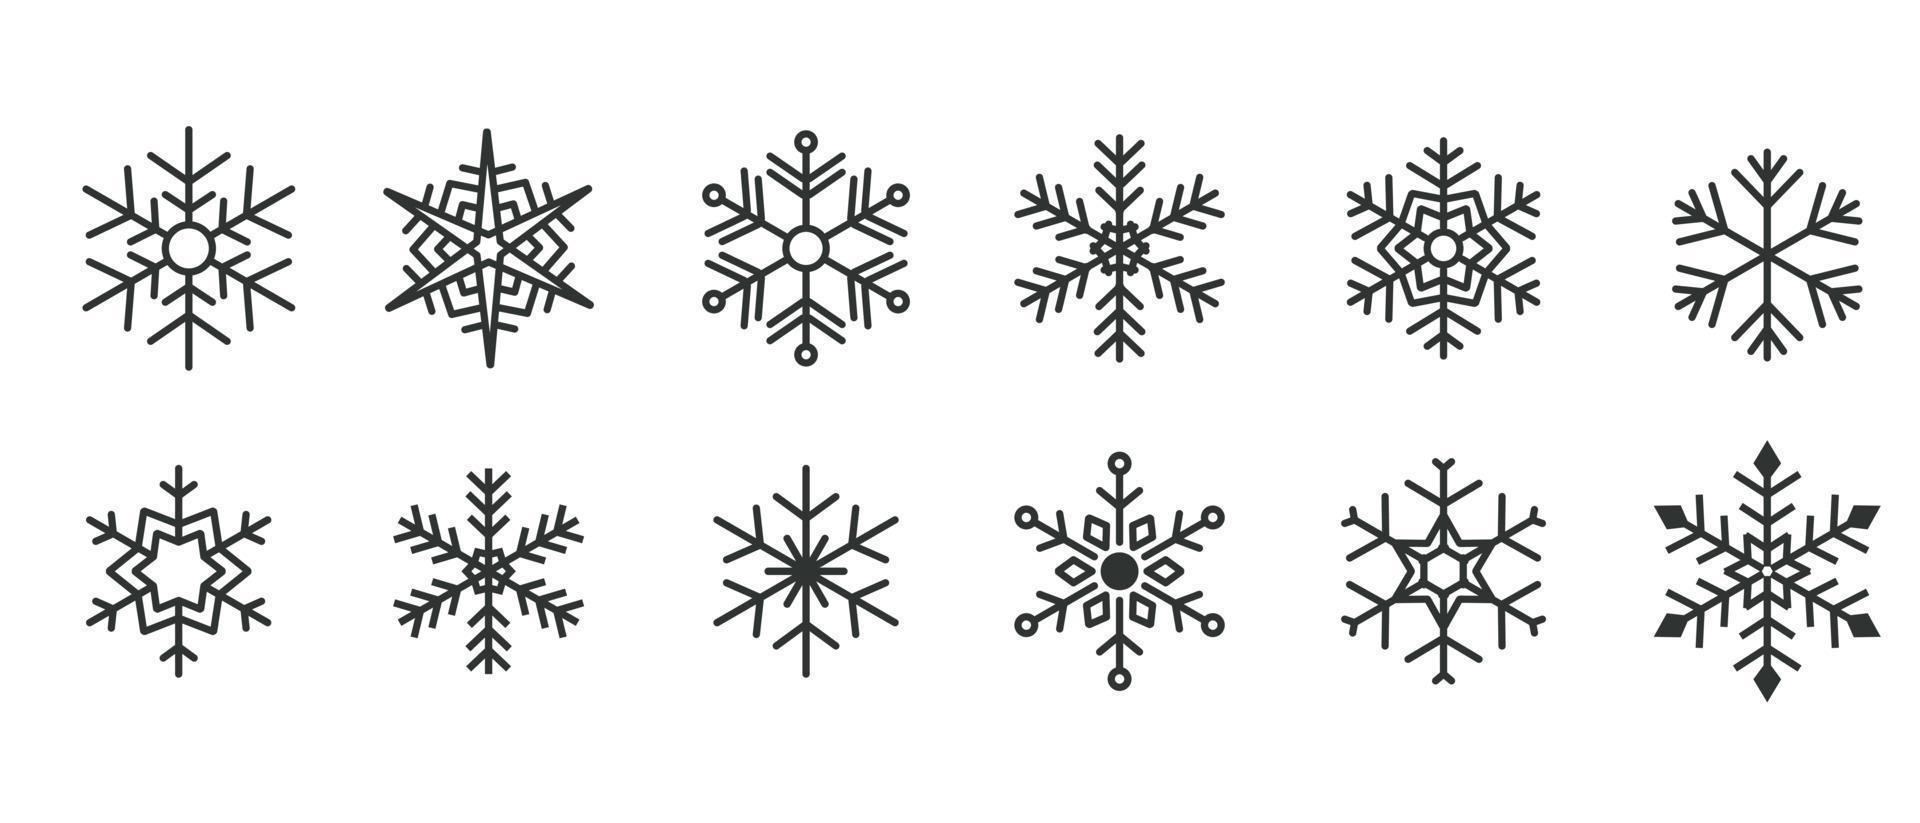 sammlung von weihnachten winter flache linie kunst schwarz verschiedene form schneeflocken verschiedene symbole dekoration element design vektor